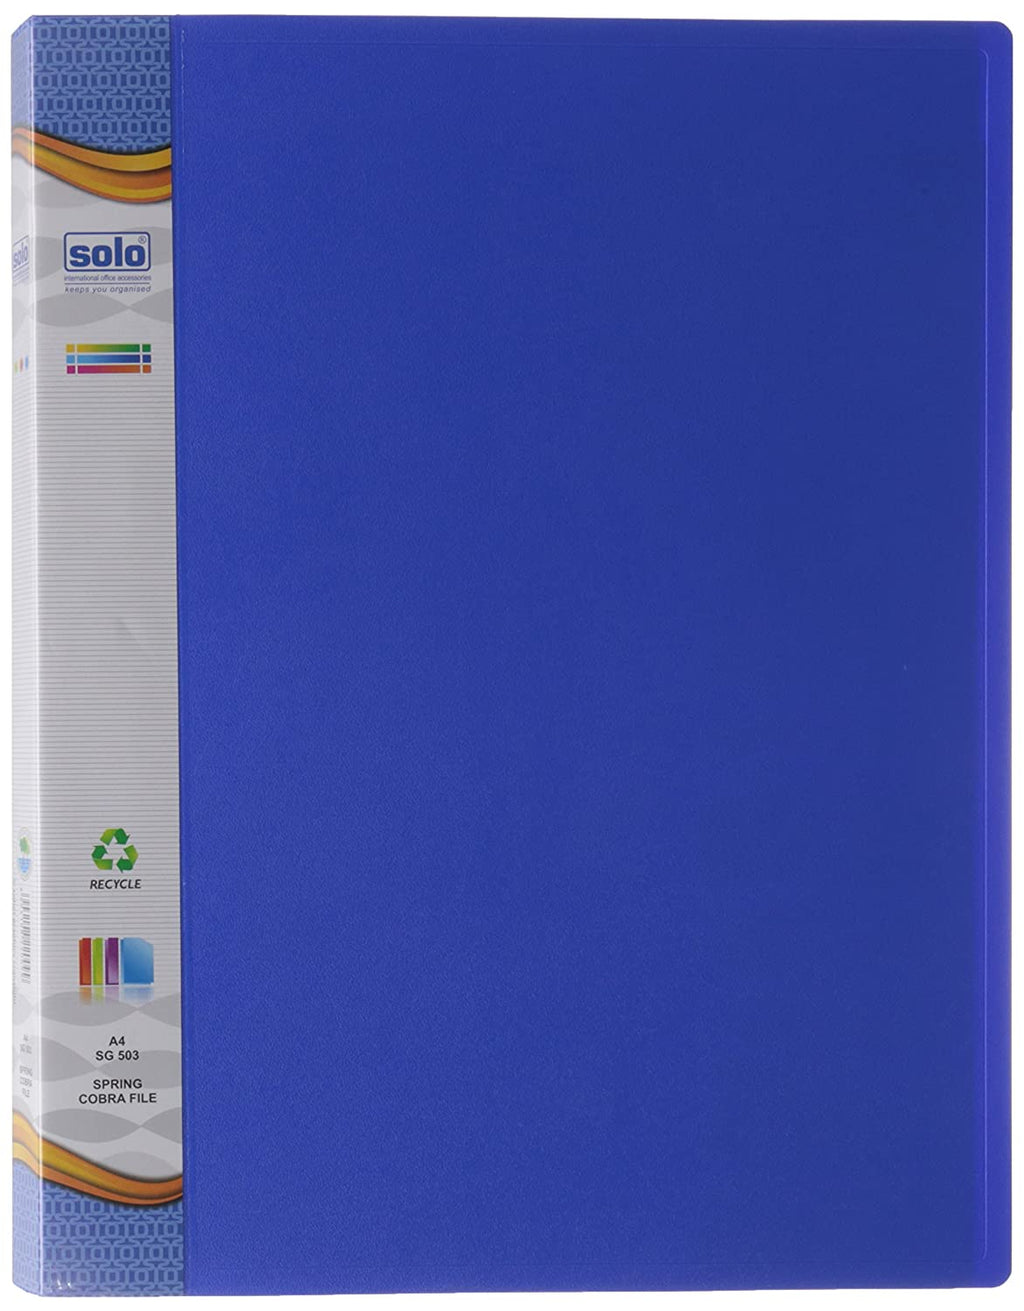 सोलो एसजी503 स्प्रिंग कोबरा फाइल ए4 ब्लू 10 का पैक